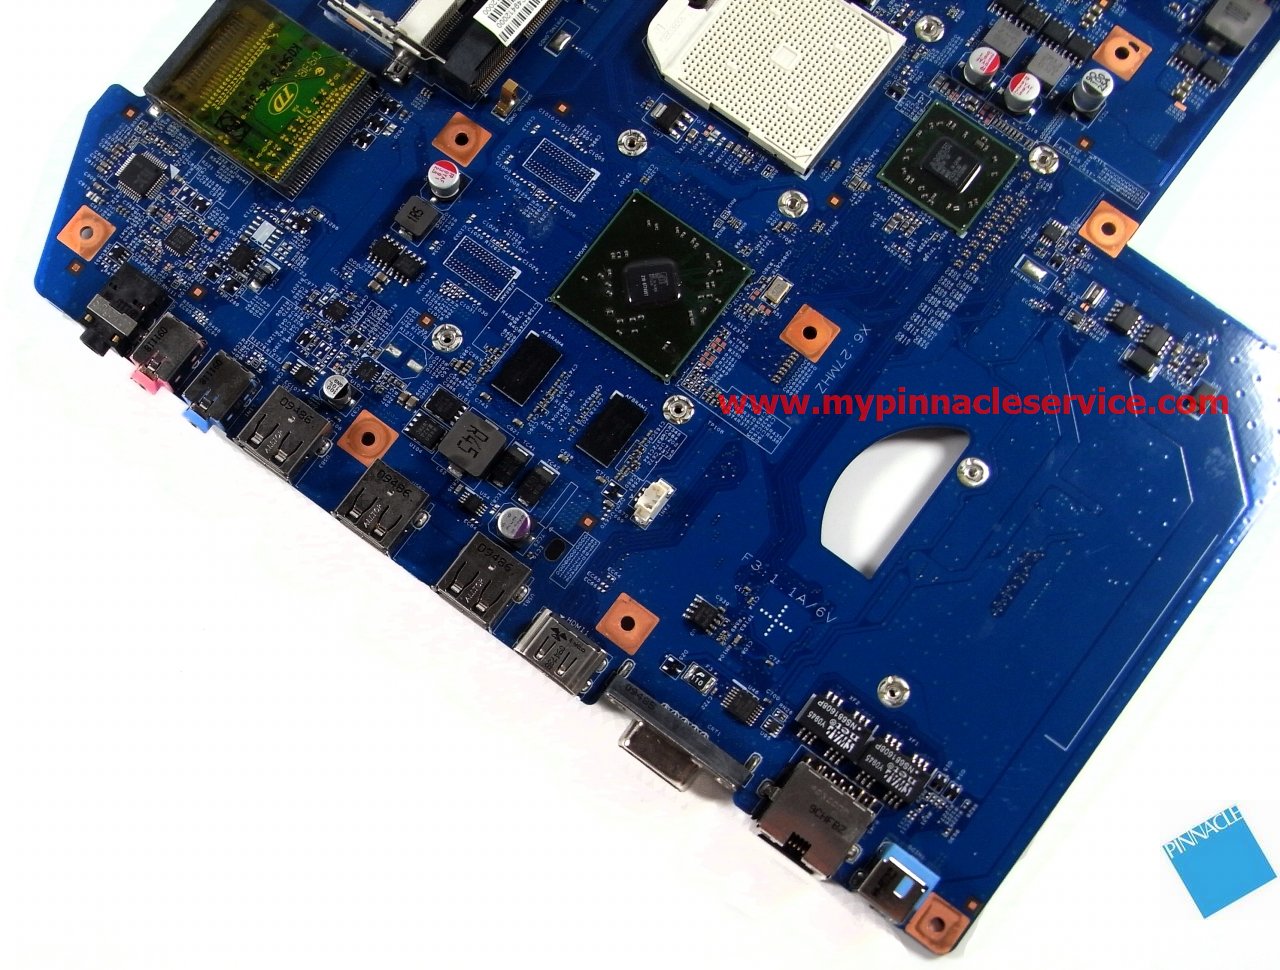 motherboard-for-acer-aspire-7540-7540g-jv71-tr8-48.4fp03.01m-rimg0031-mbppq01001.jpg